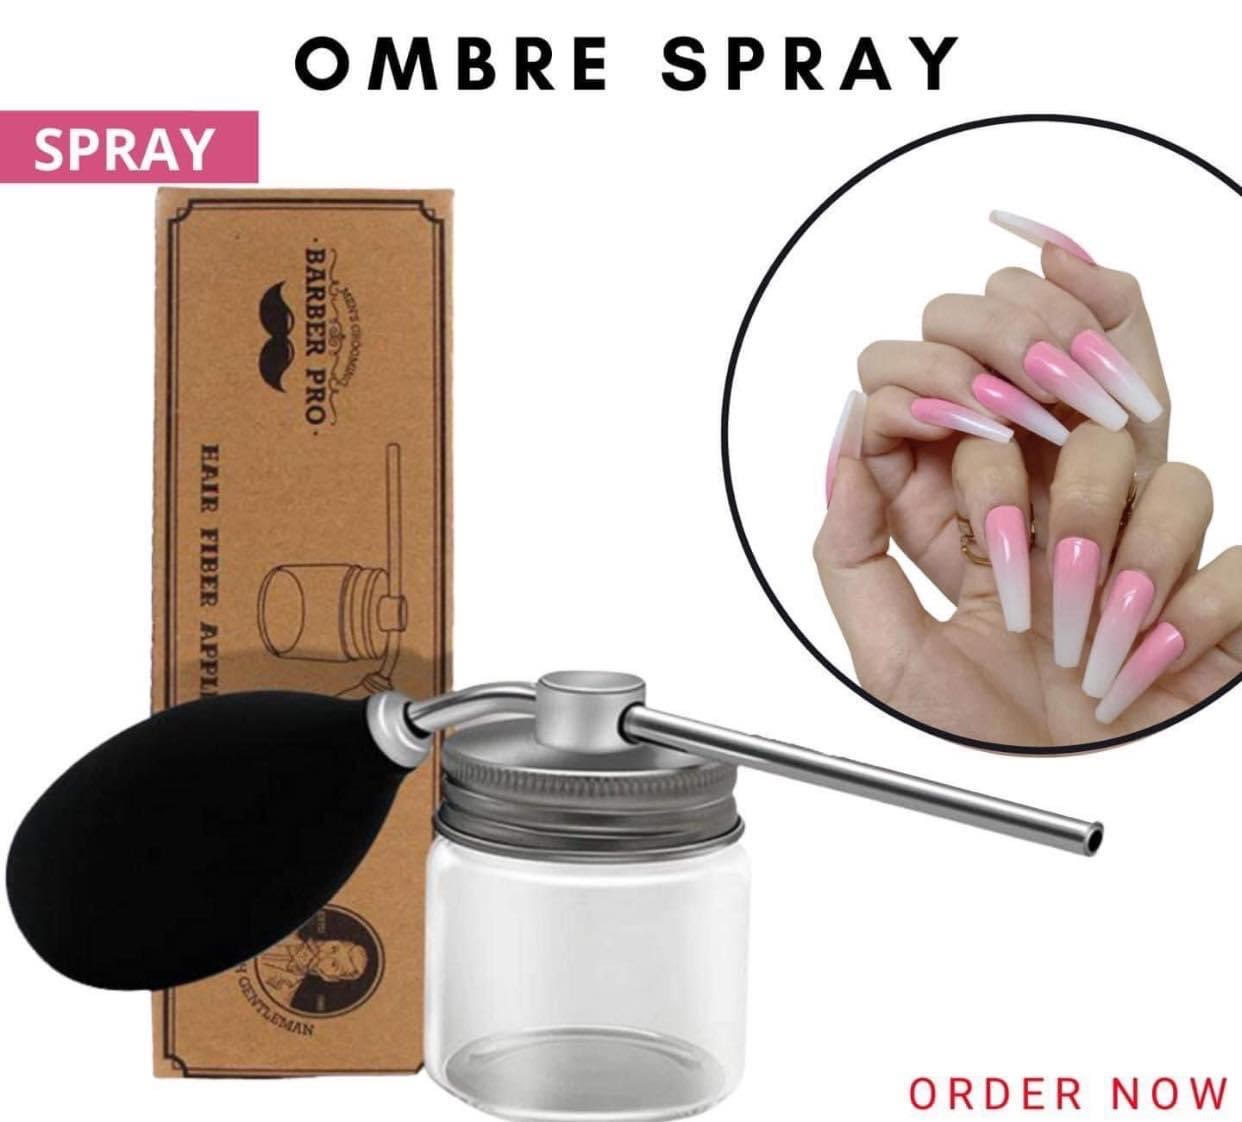 Ombre Nail Spray là công nghệ làm đẹp móng tay nhanh và tiện lợi nhất hiện nay. Với nhiều lựa chọn màu sắc, kết hợp với tay nghề cao của thợ làm móng chuyên nghiệp, kết quả tuyệt đẹp. Đừng bỏ qua hình ảnh liên quan để cập nhật xu hướng mới nhất cho bộ móng tay của bạn.